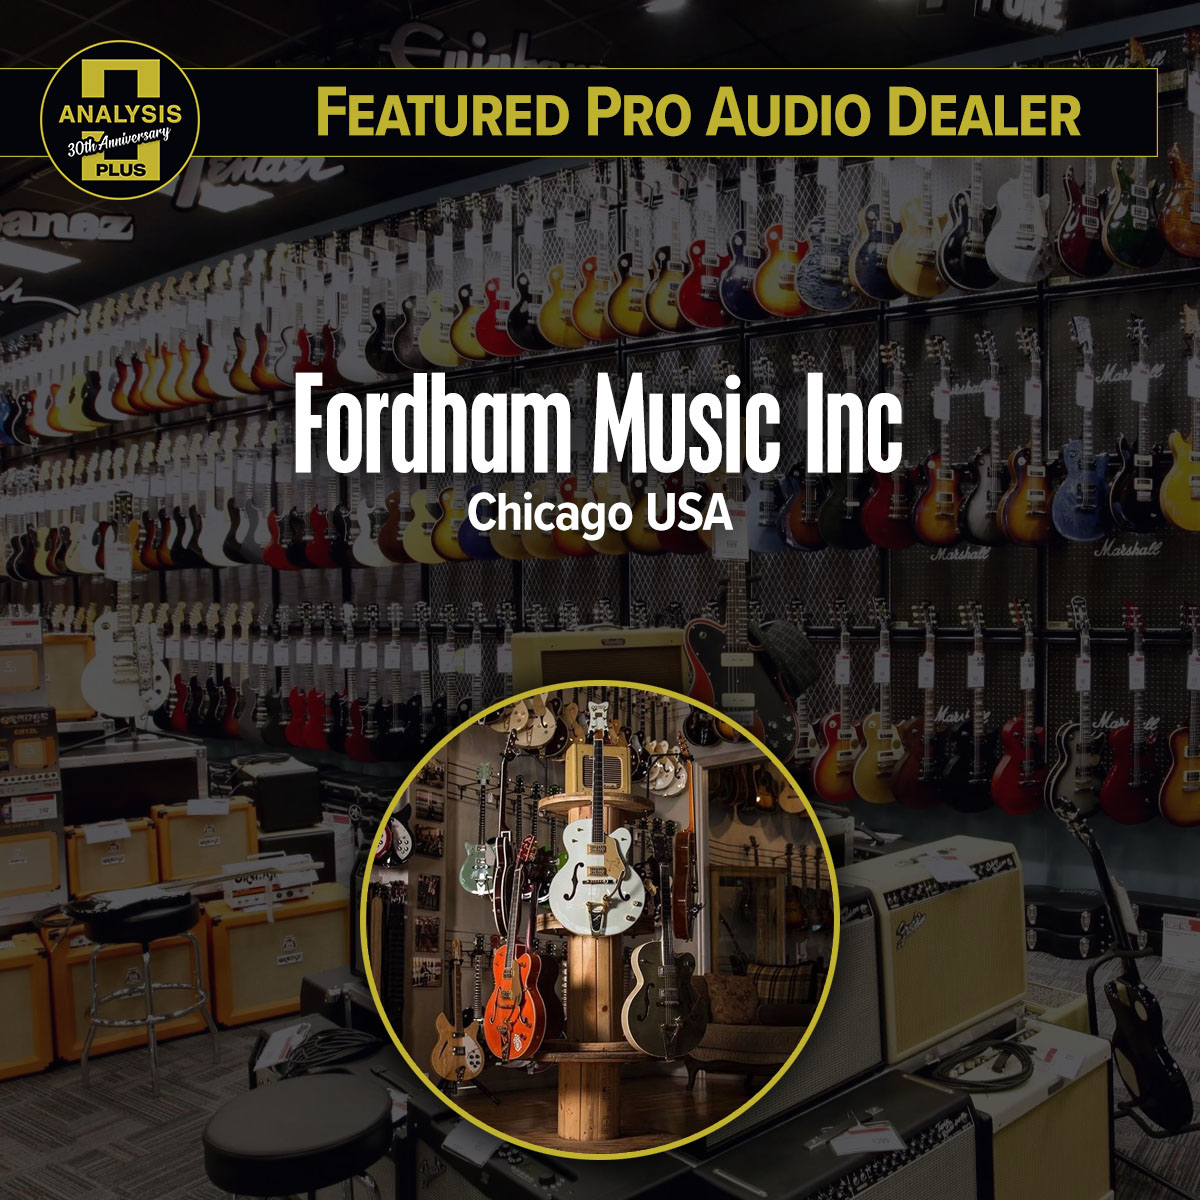 Fordham Music